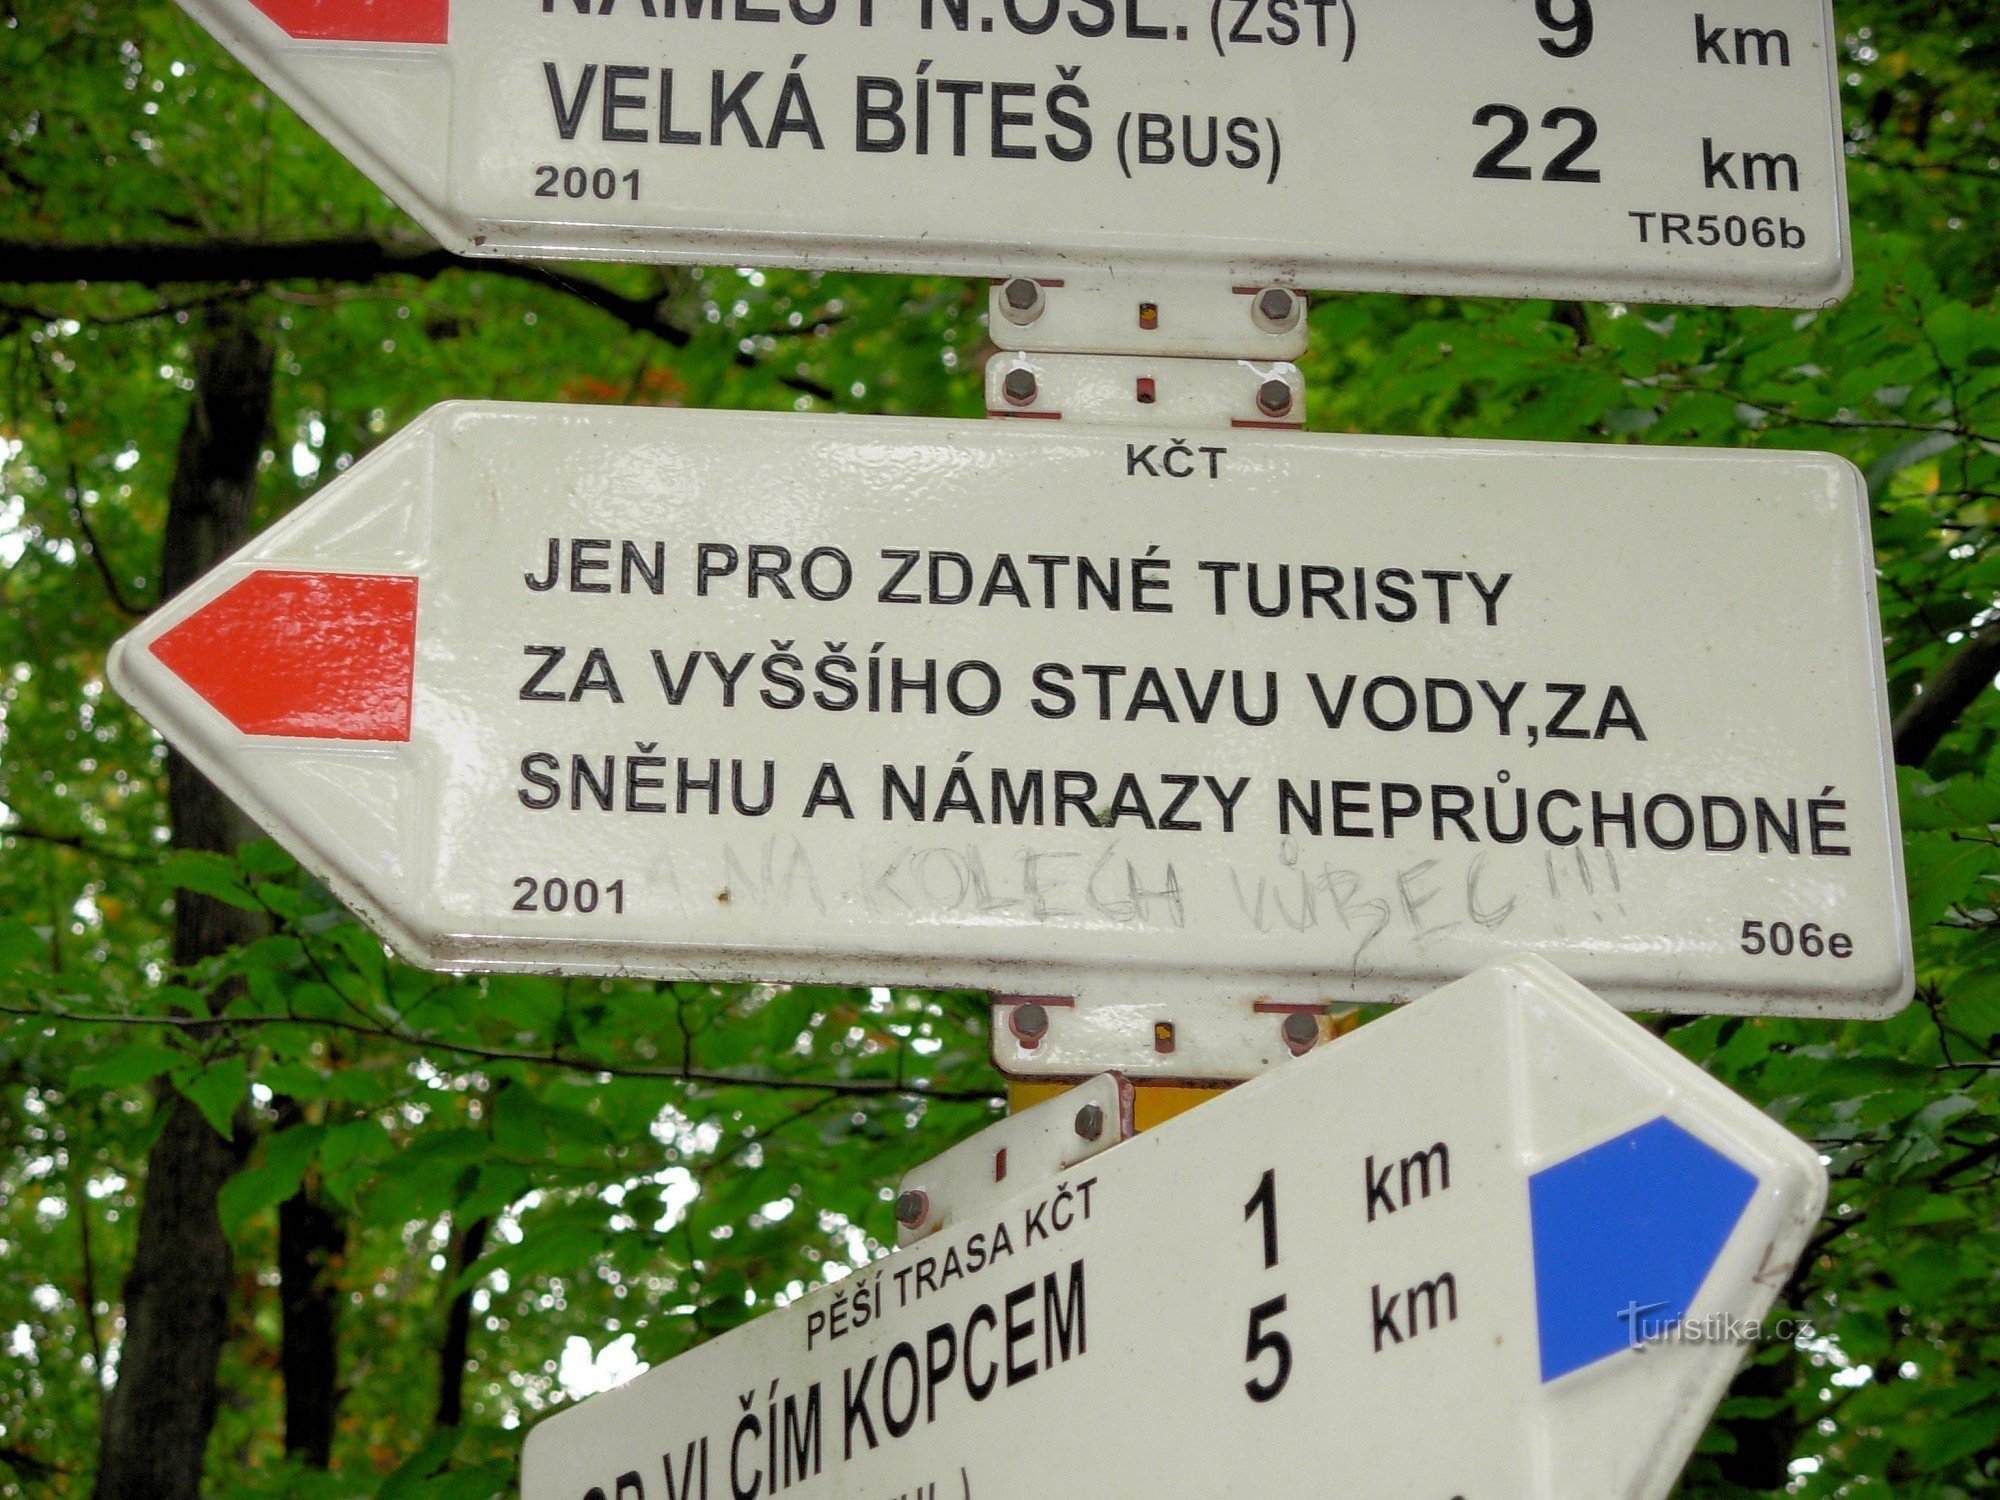 A tourist-demanding route